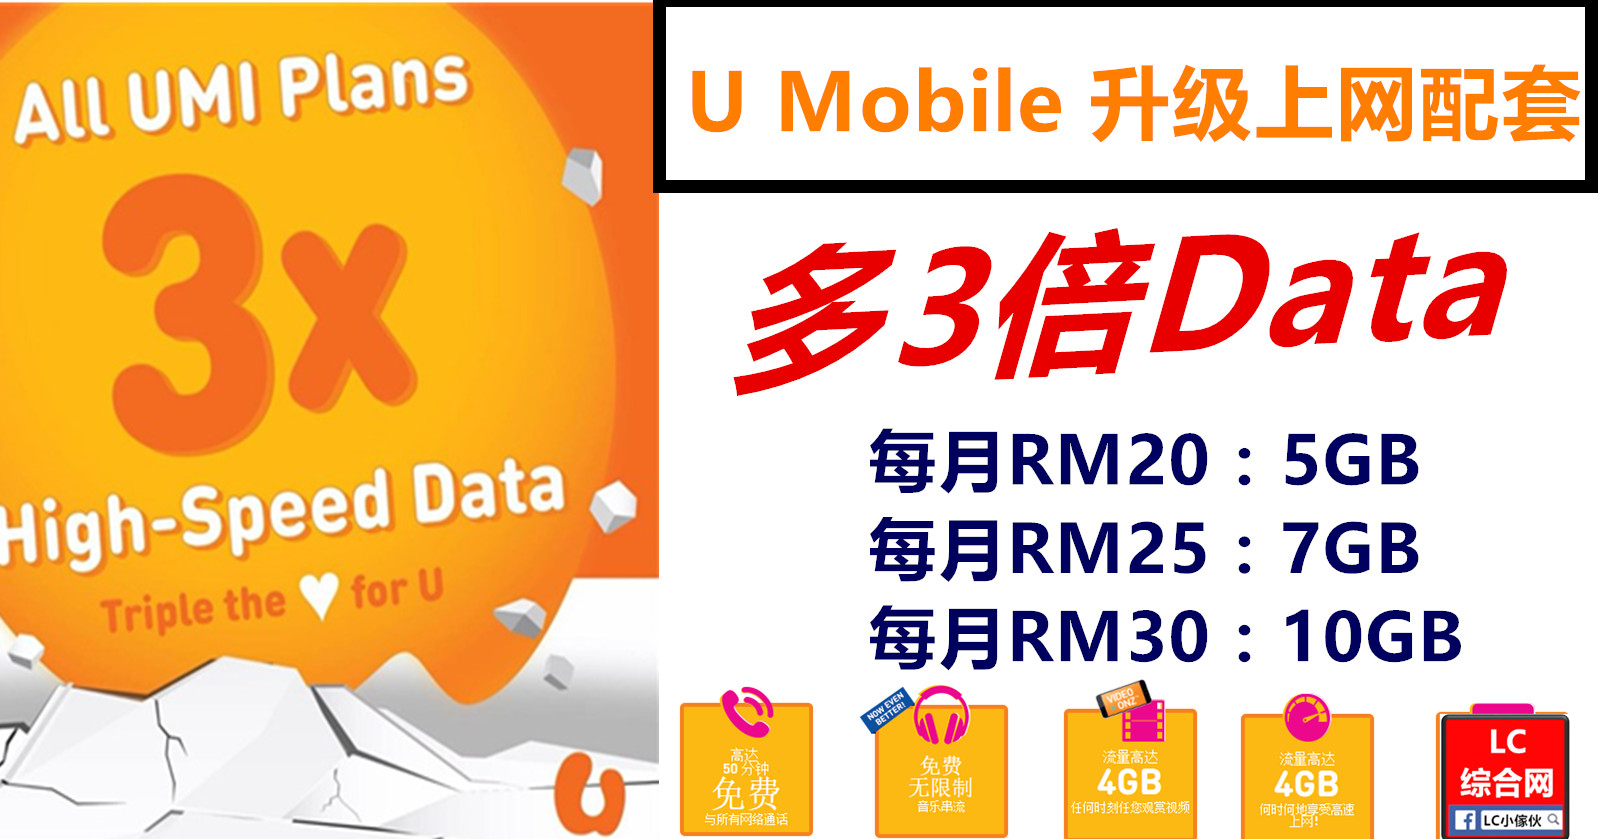 U mobile prepaid 配套 2021